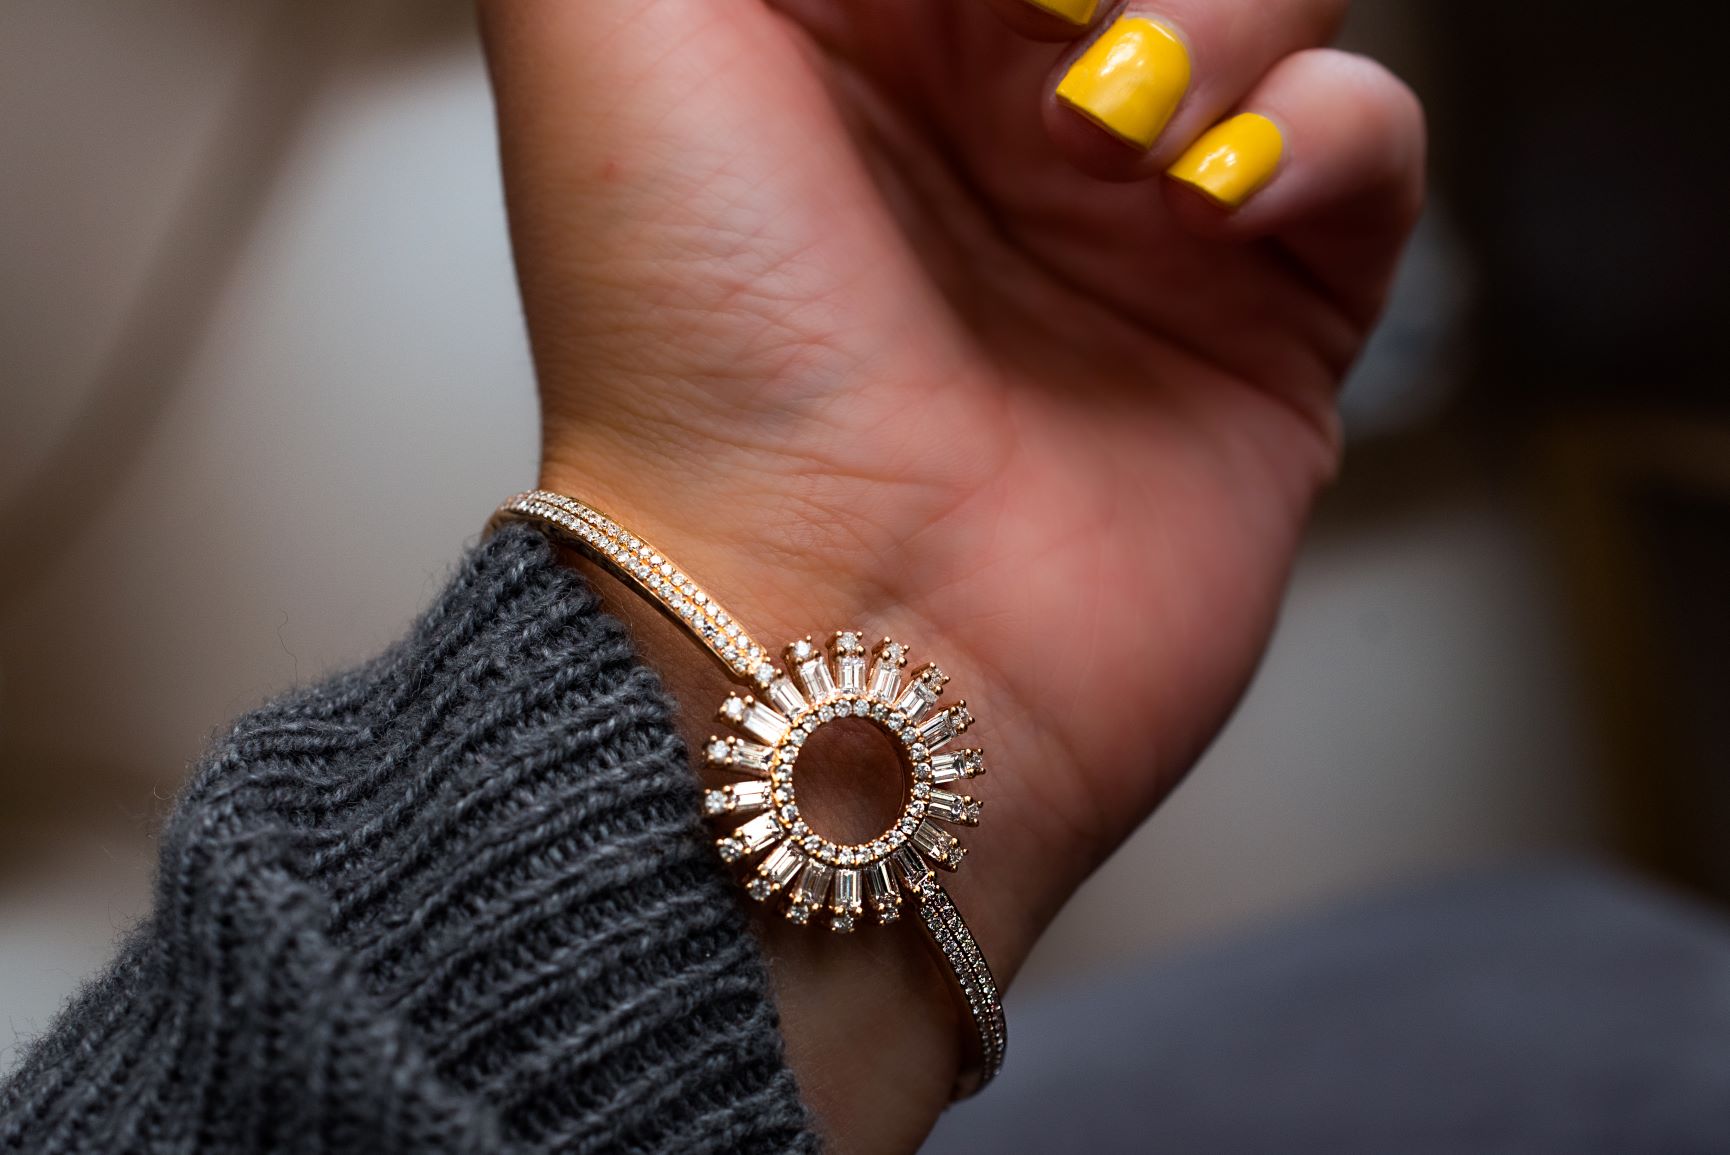 18k Rose Gold Baguette Diamond Bangle Bracelet